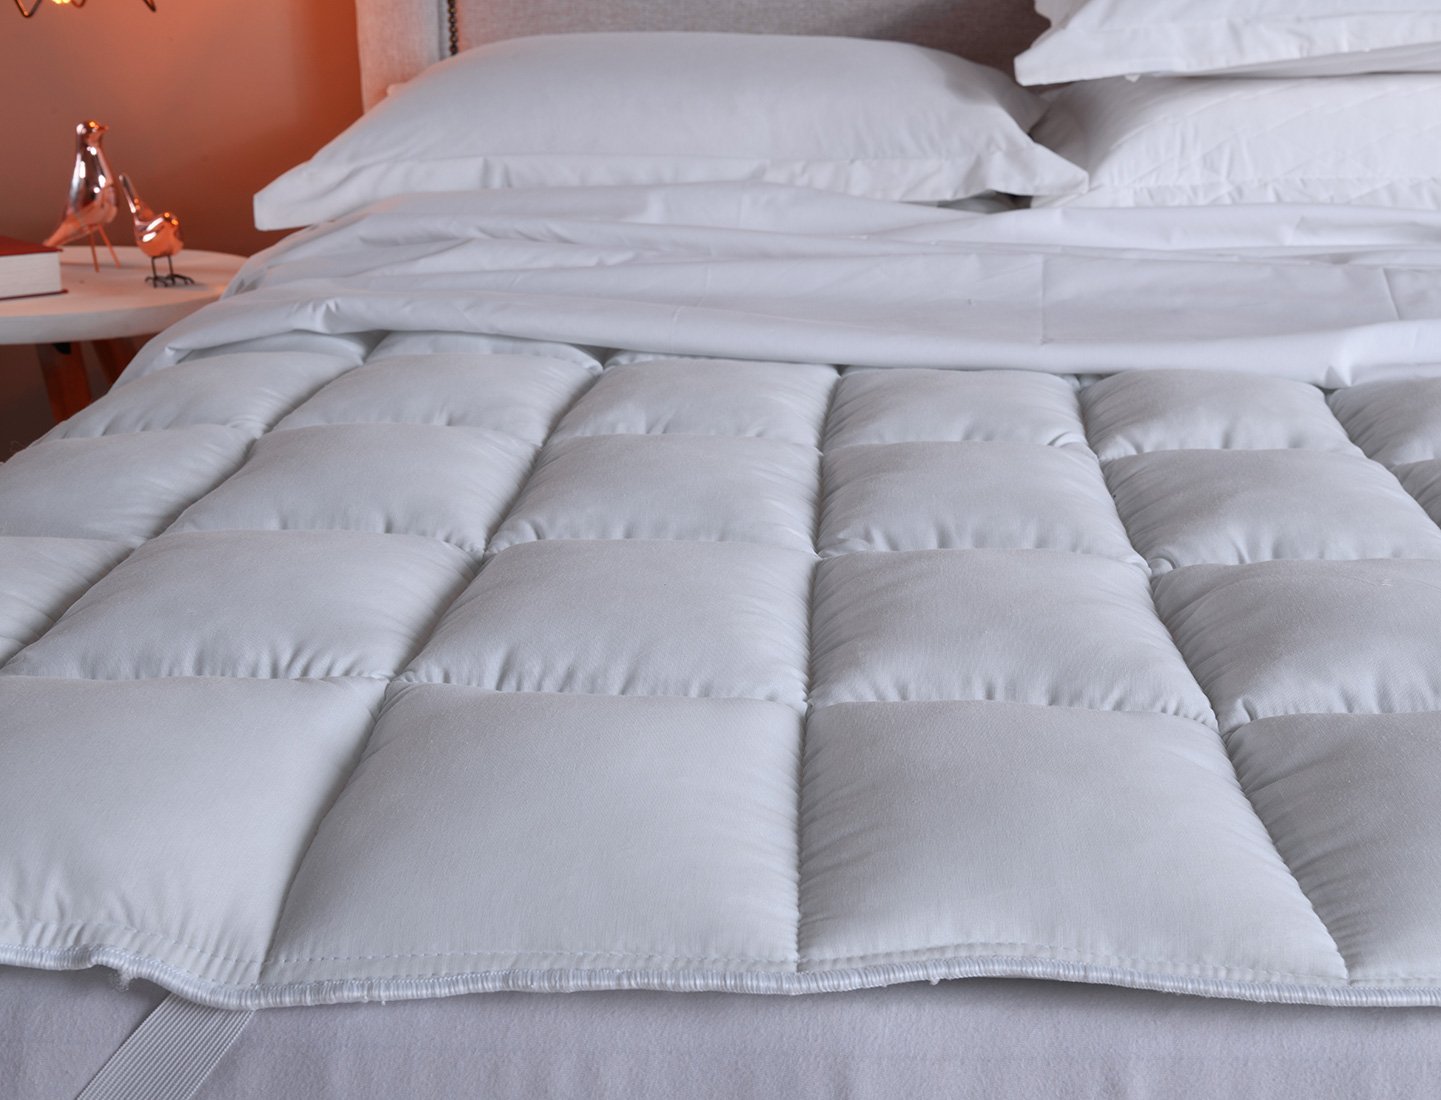 Pillow Top Casal Fibra Siliconizada em Flocos Branco - 138x188cm - 2